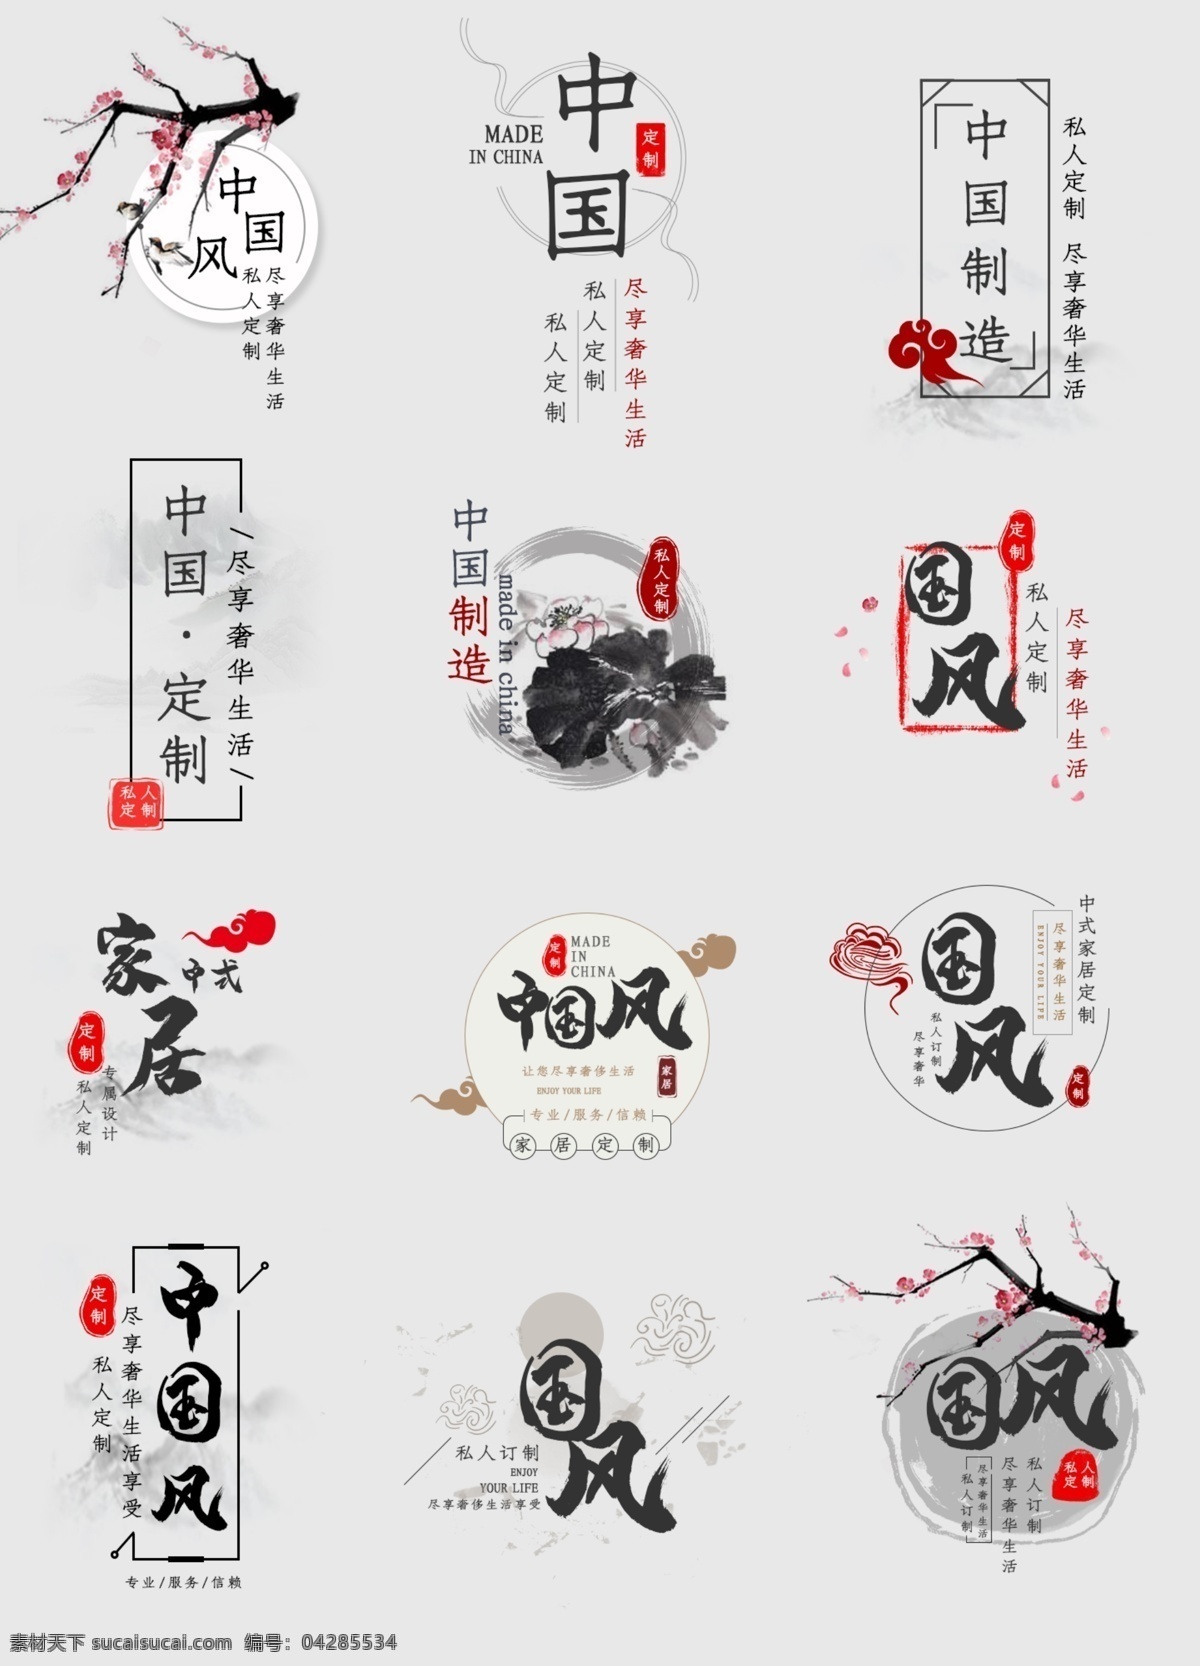 中式 古典 简约 大气 水墨 中国 风 家装 中国风 中国风字体 中国风排版 中国风家装 家装排版 字体排版 字体 排版 中式字体 中式装修 中式家装